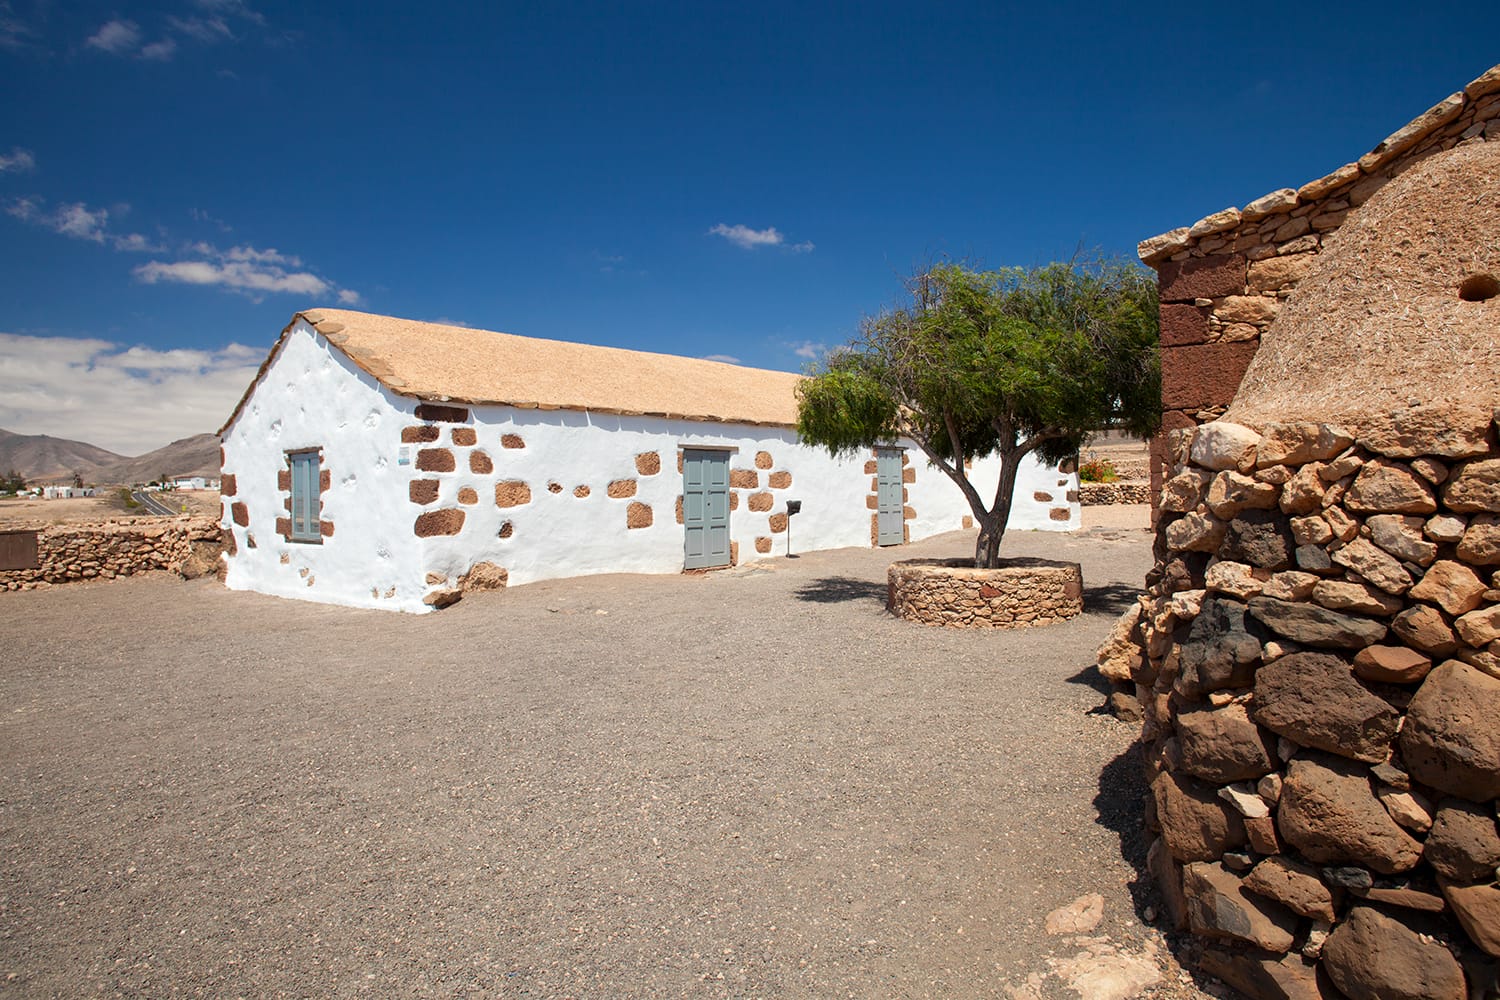 Open air museum Ecomuseo De La Alcogida in Fuerteventura, Canary Islands